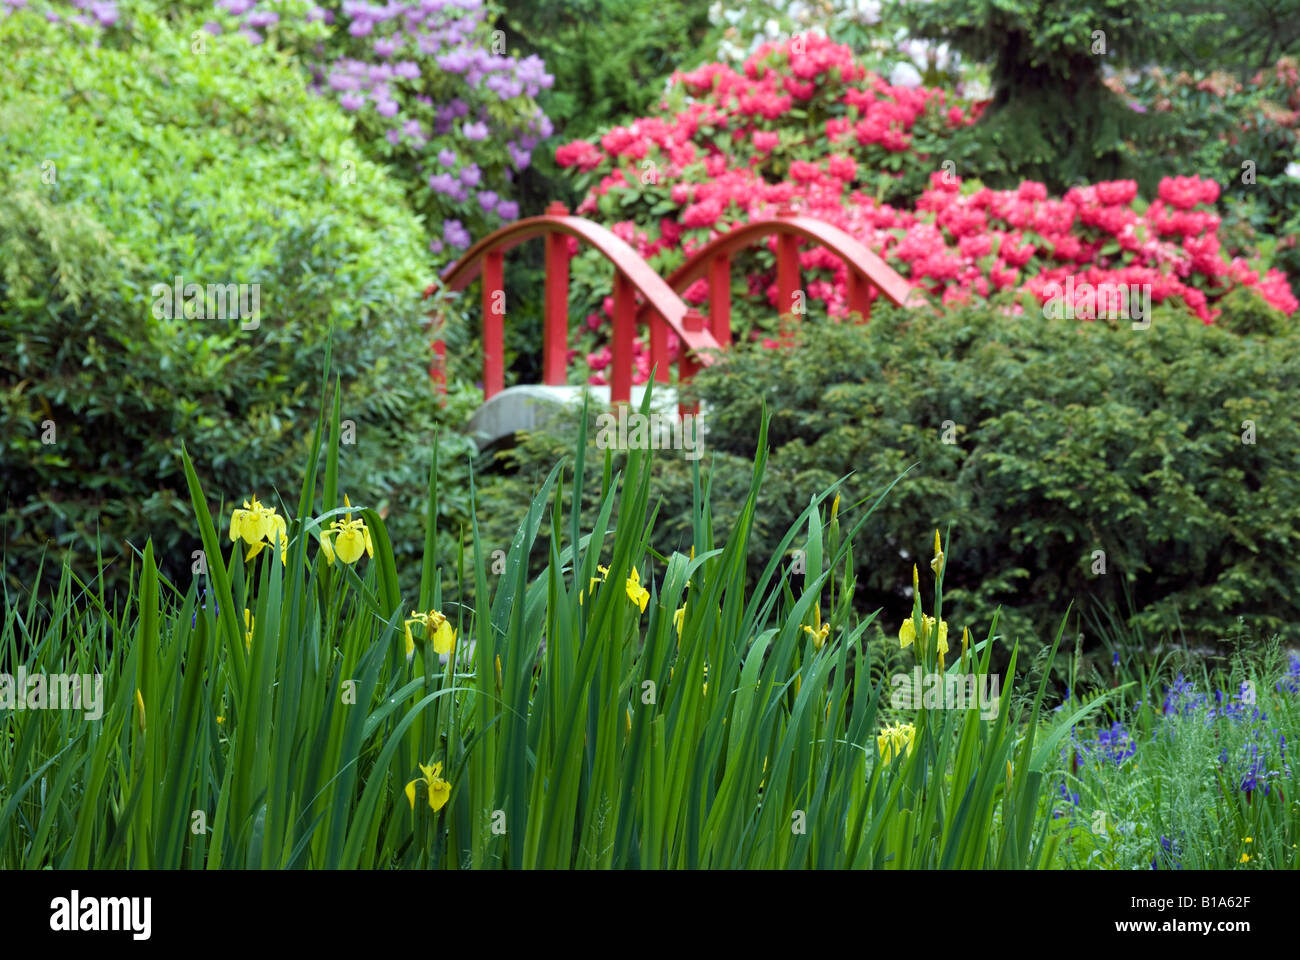 Seattle's Kubota Garden. Stock Photo